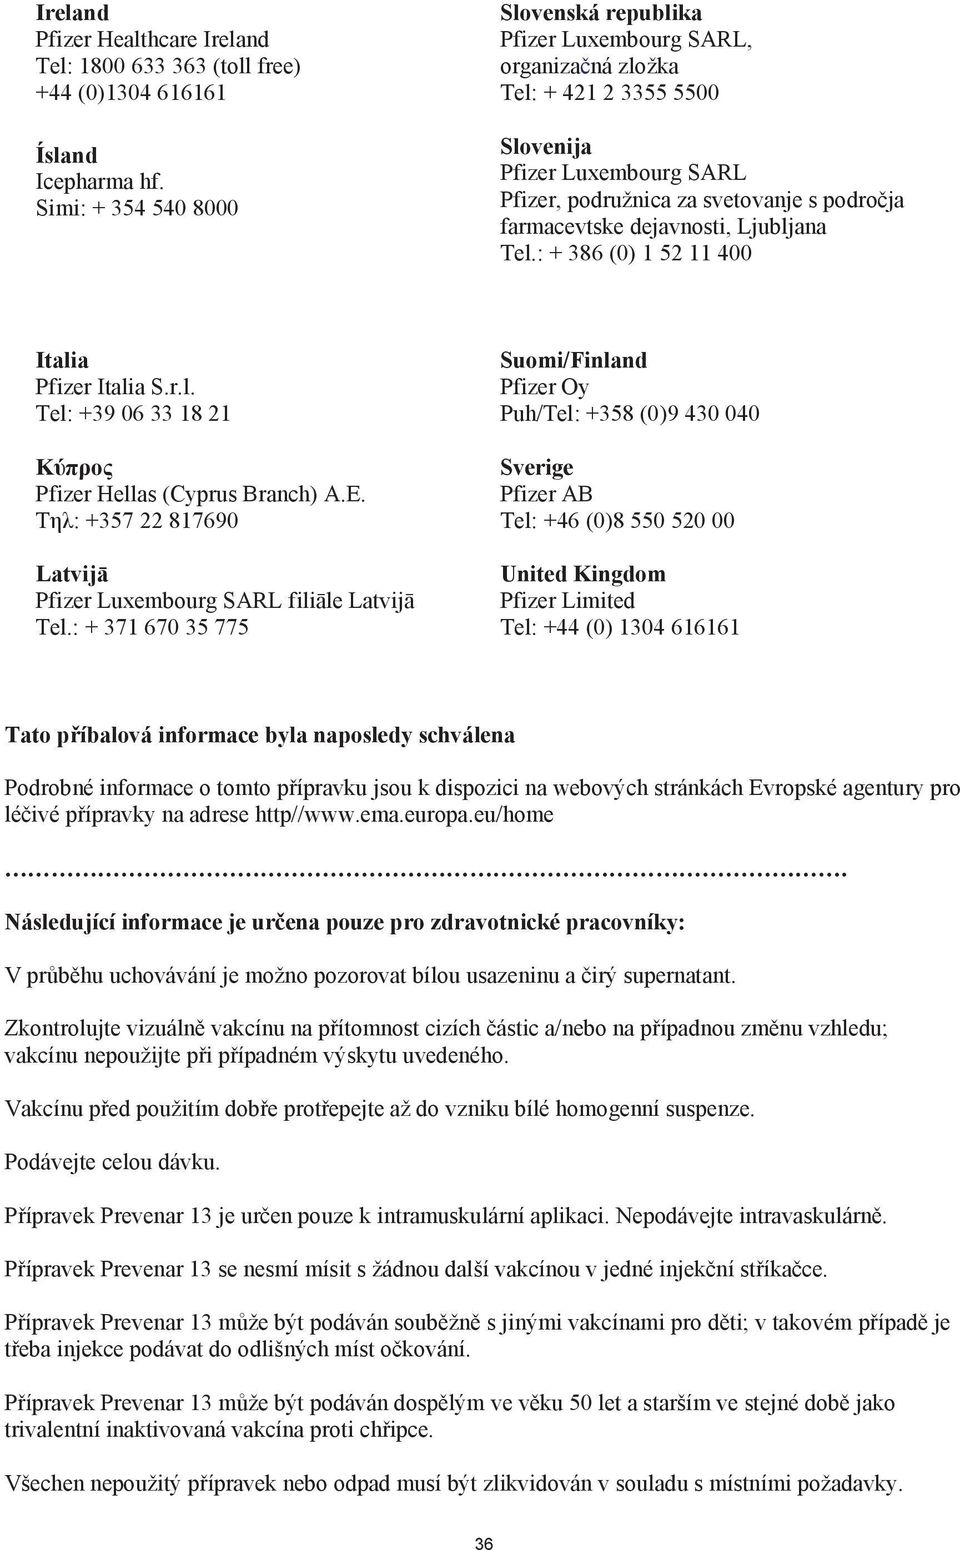 dejavnosti, Ljubljana Tel.: + 386 (0) 1 52 11 400 Italia Pfizer Italia S.r.l. Tel: +39 06 33 18 21 K Pfizer Hellas (Cyprus Branch) A.E.